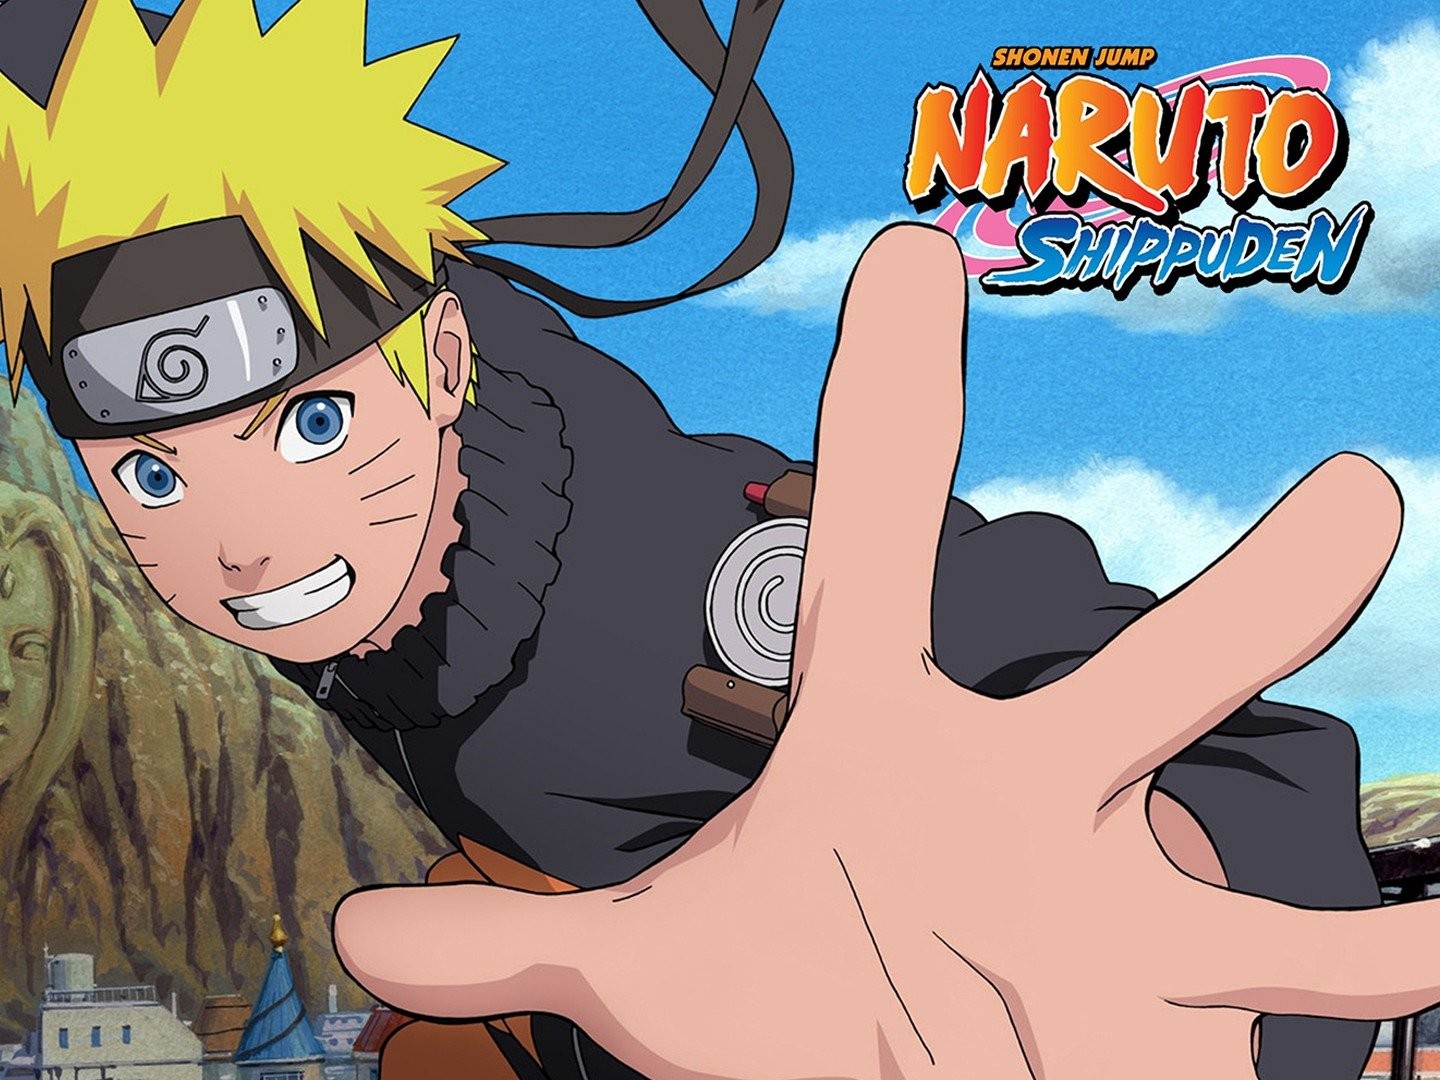 Naruto Shippuden - Naruto Shippuuden, Naruto: Shippuden, NARUTO